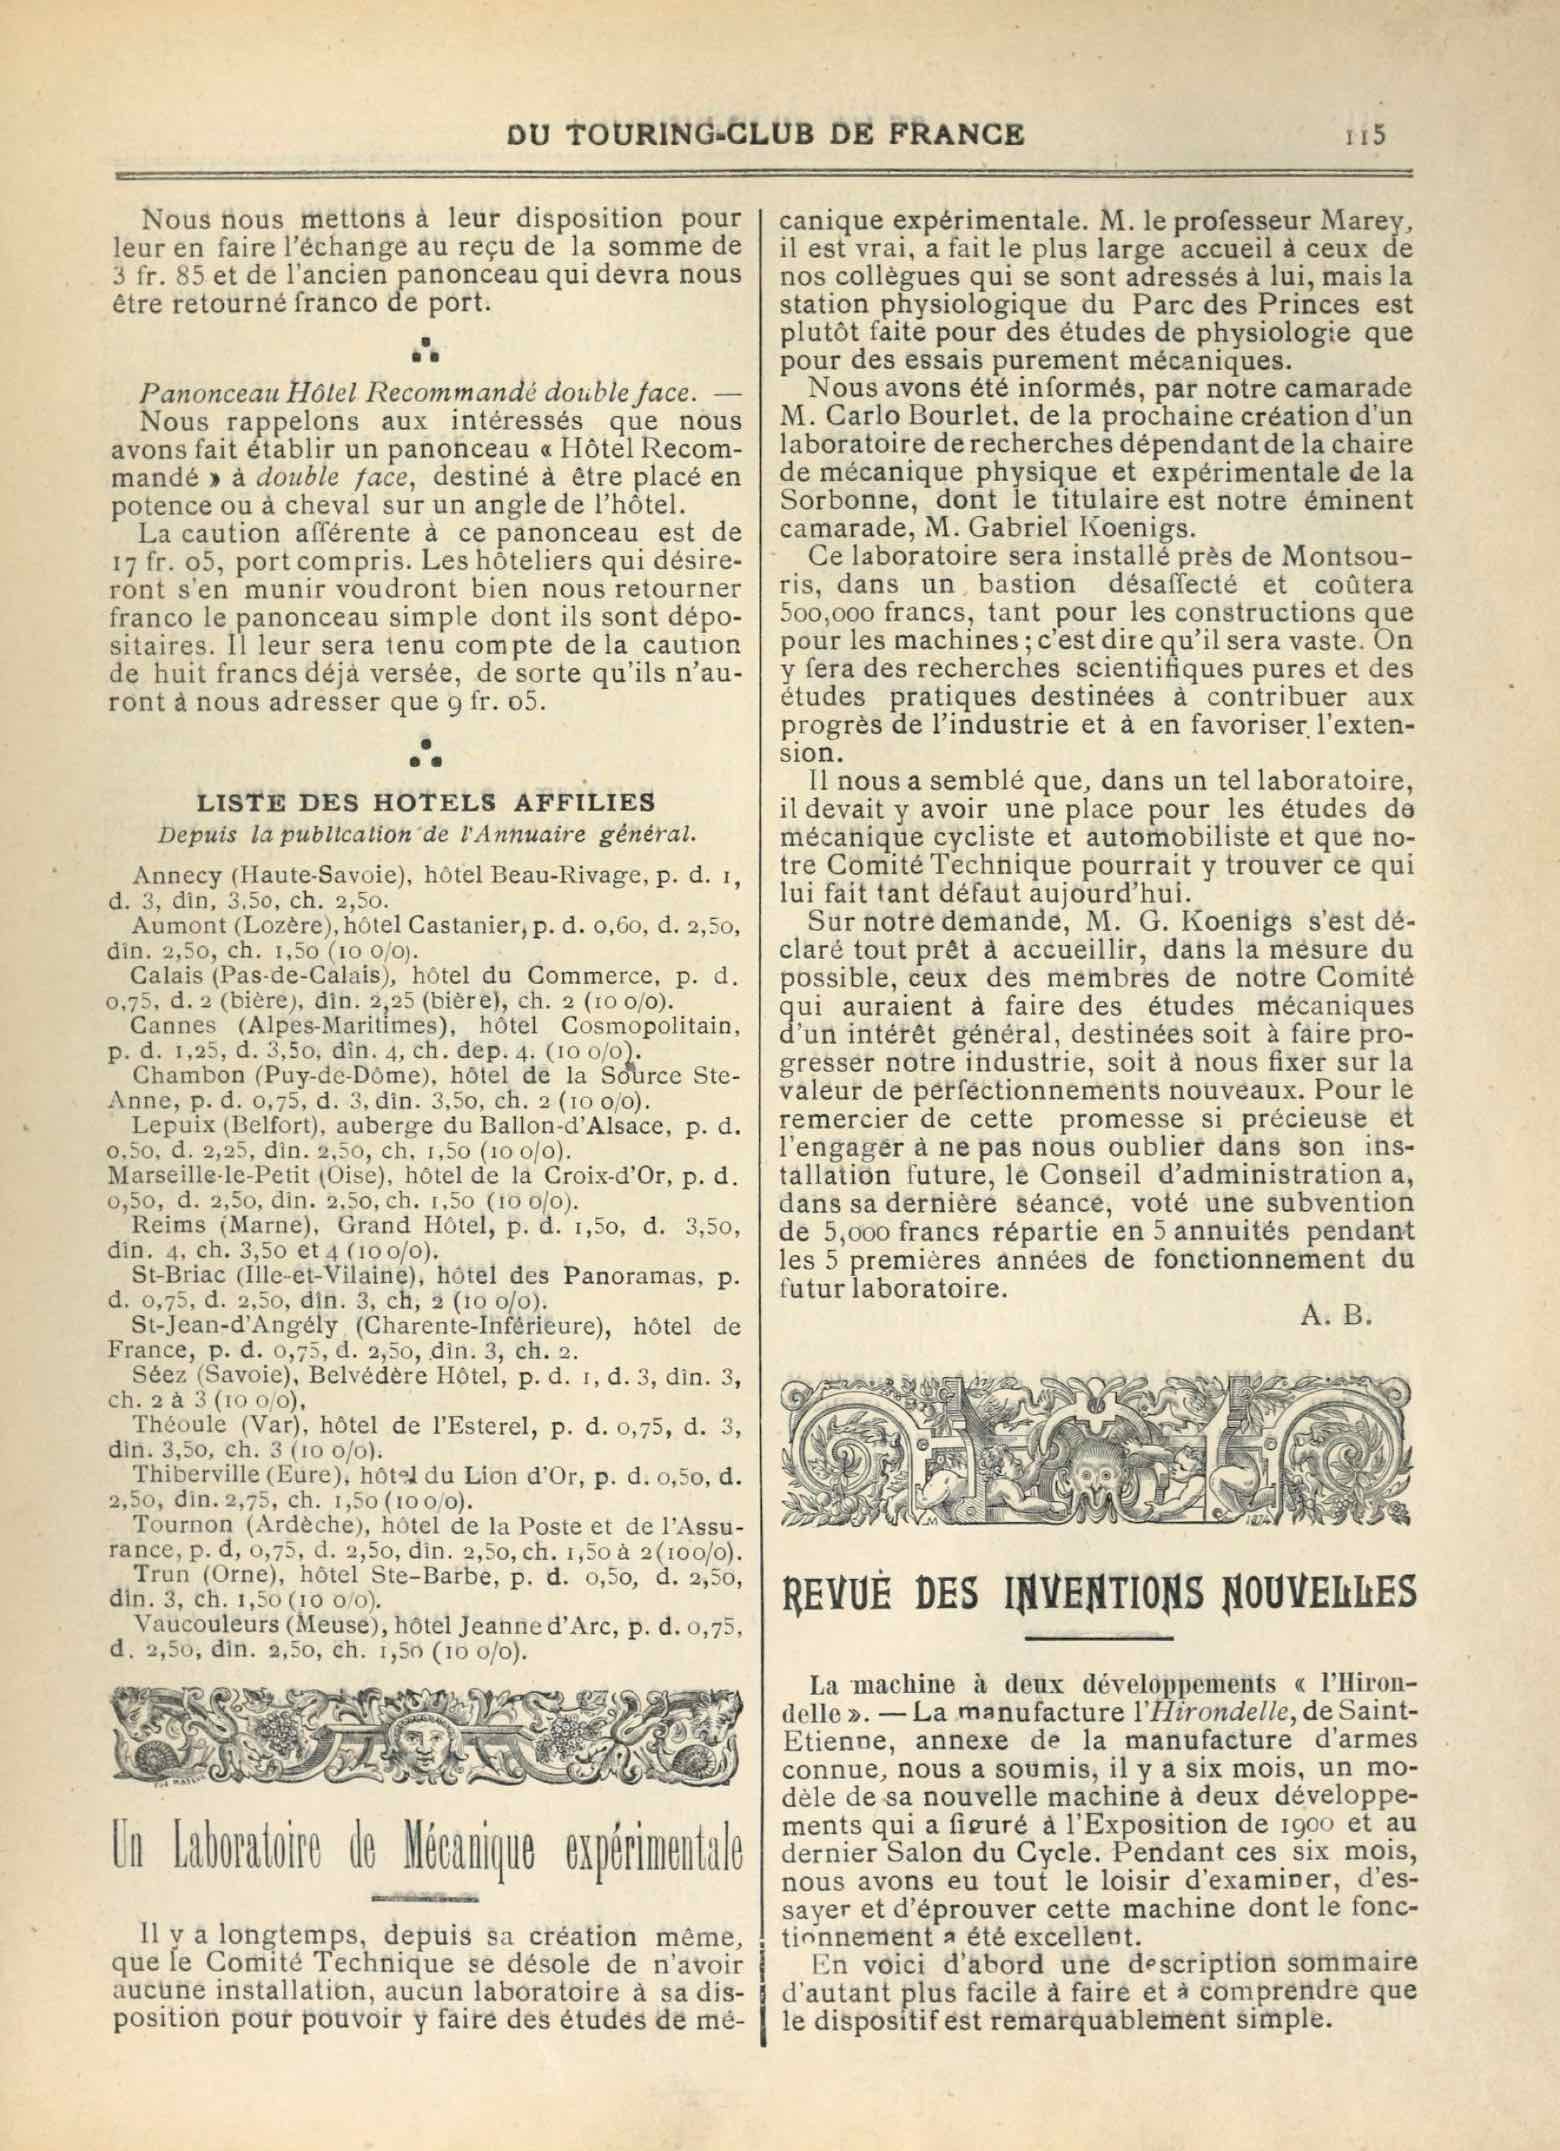 T.C.F. Revue Mensuelle March 1901 - Revue des inventions nouvelles scan 1 main image